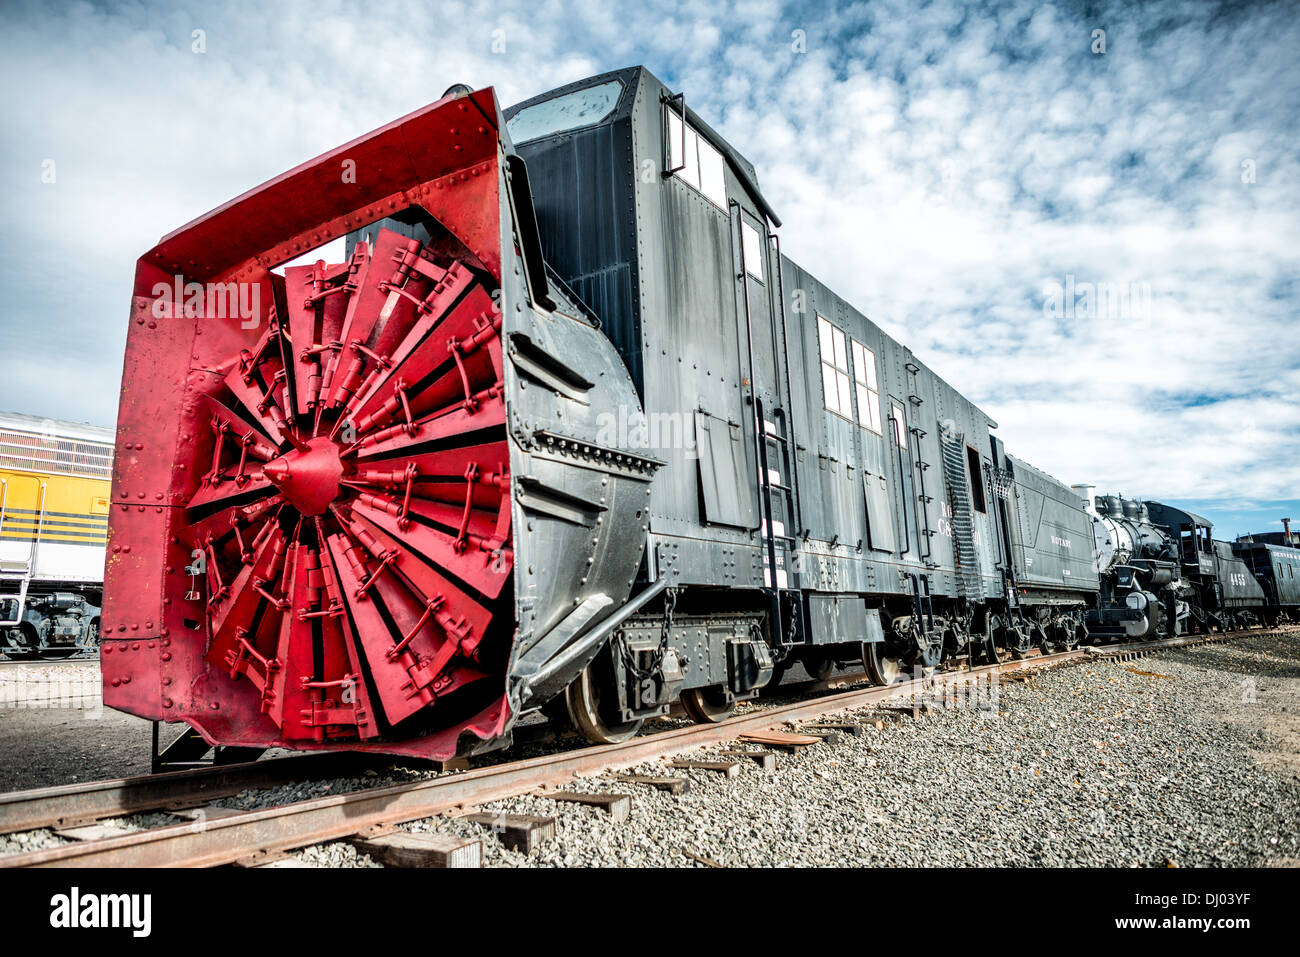 GOLDEN, Colorado - Ein Schneepflug im Colorado Railroad Museum in Golden, Colorado. Diese Maschinen verfügten über einen Dampfkessel und Zylinder, um die Rotorblätter nach vorn zu drehen, und einen Zunder an der Rückseite, der die Kohle und das Wasser transportierte, die für den Kessel benötigt wurden. Der Drehpflug war nicht selbstfahrend, sondern erforderte Lokomotiven, um ihn zu schieben. Die großen Klingen an der Vorderseite hackten bei Schnee und die Rutsche wurde zu beiden Seiten von den Ketten weg geleitet. Stockfoto